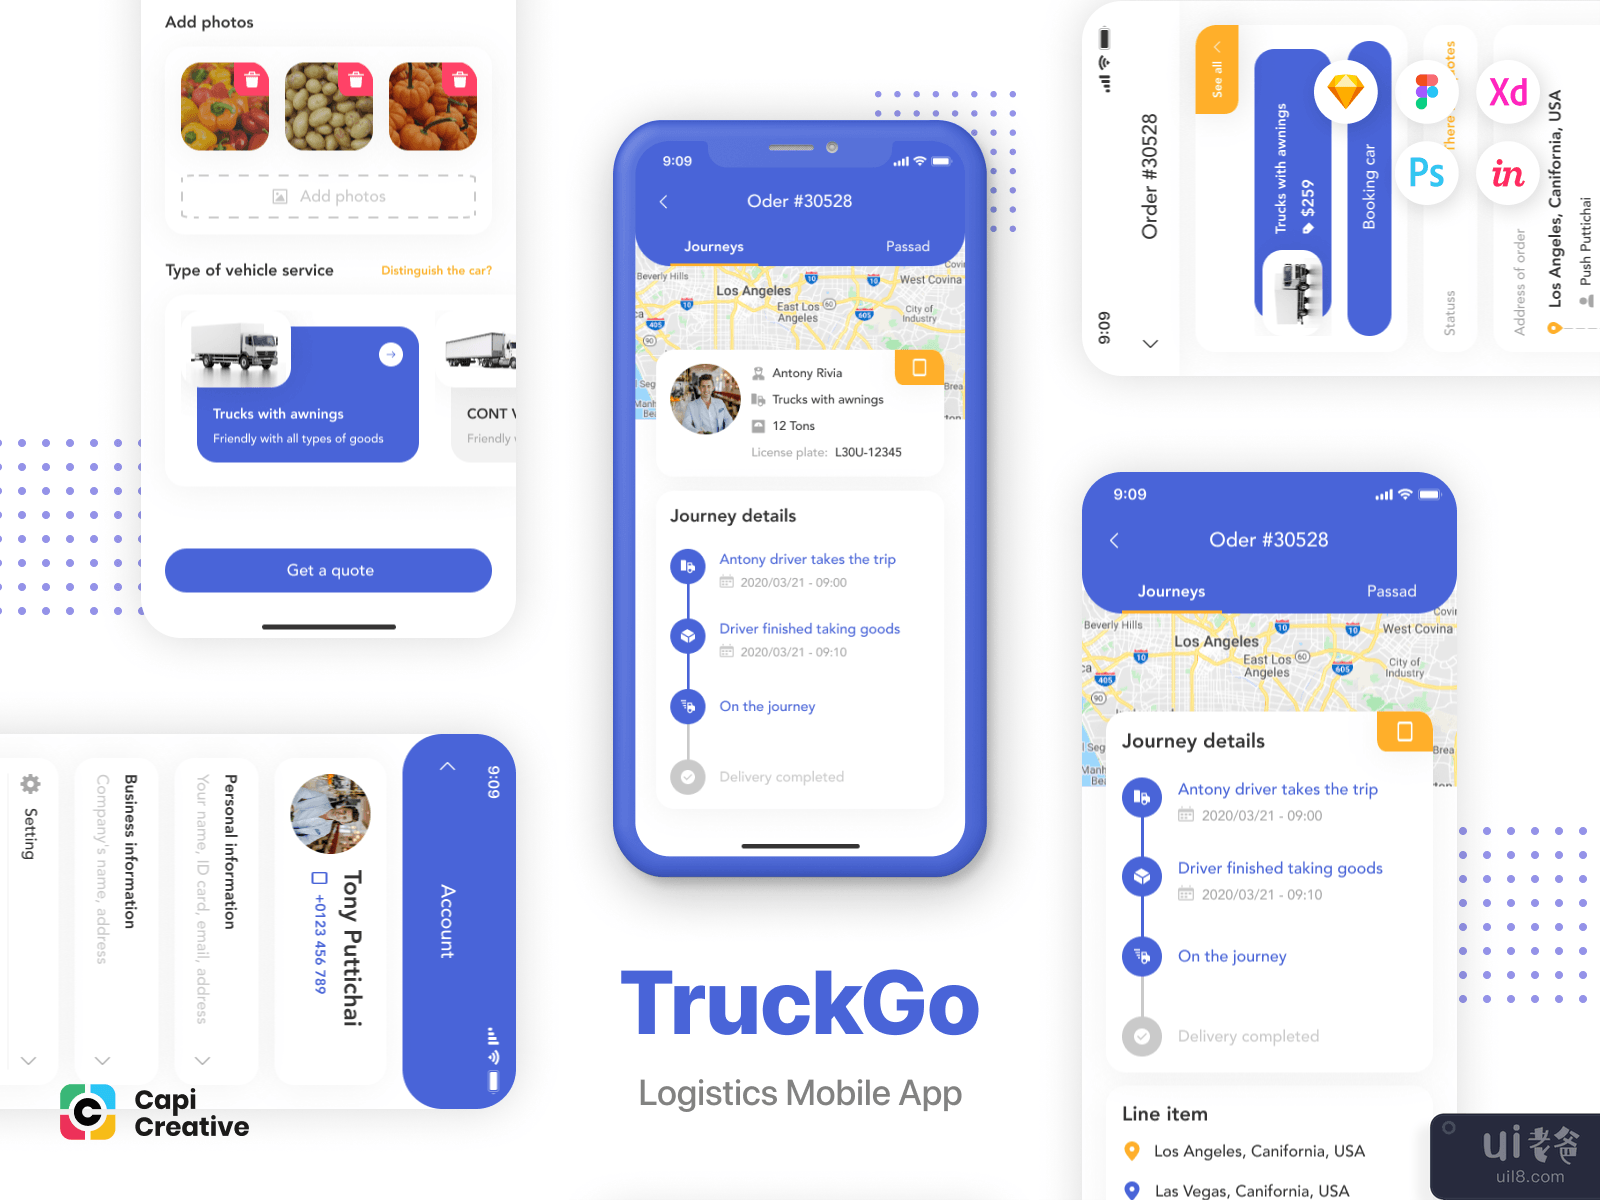 TruckGo - Logistics Mobile App #3